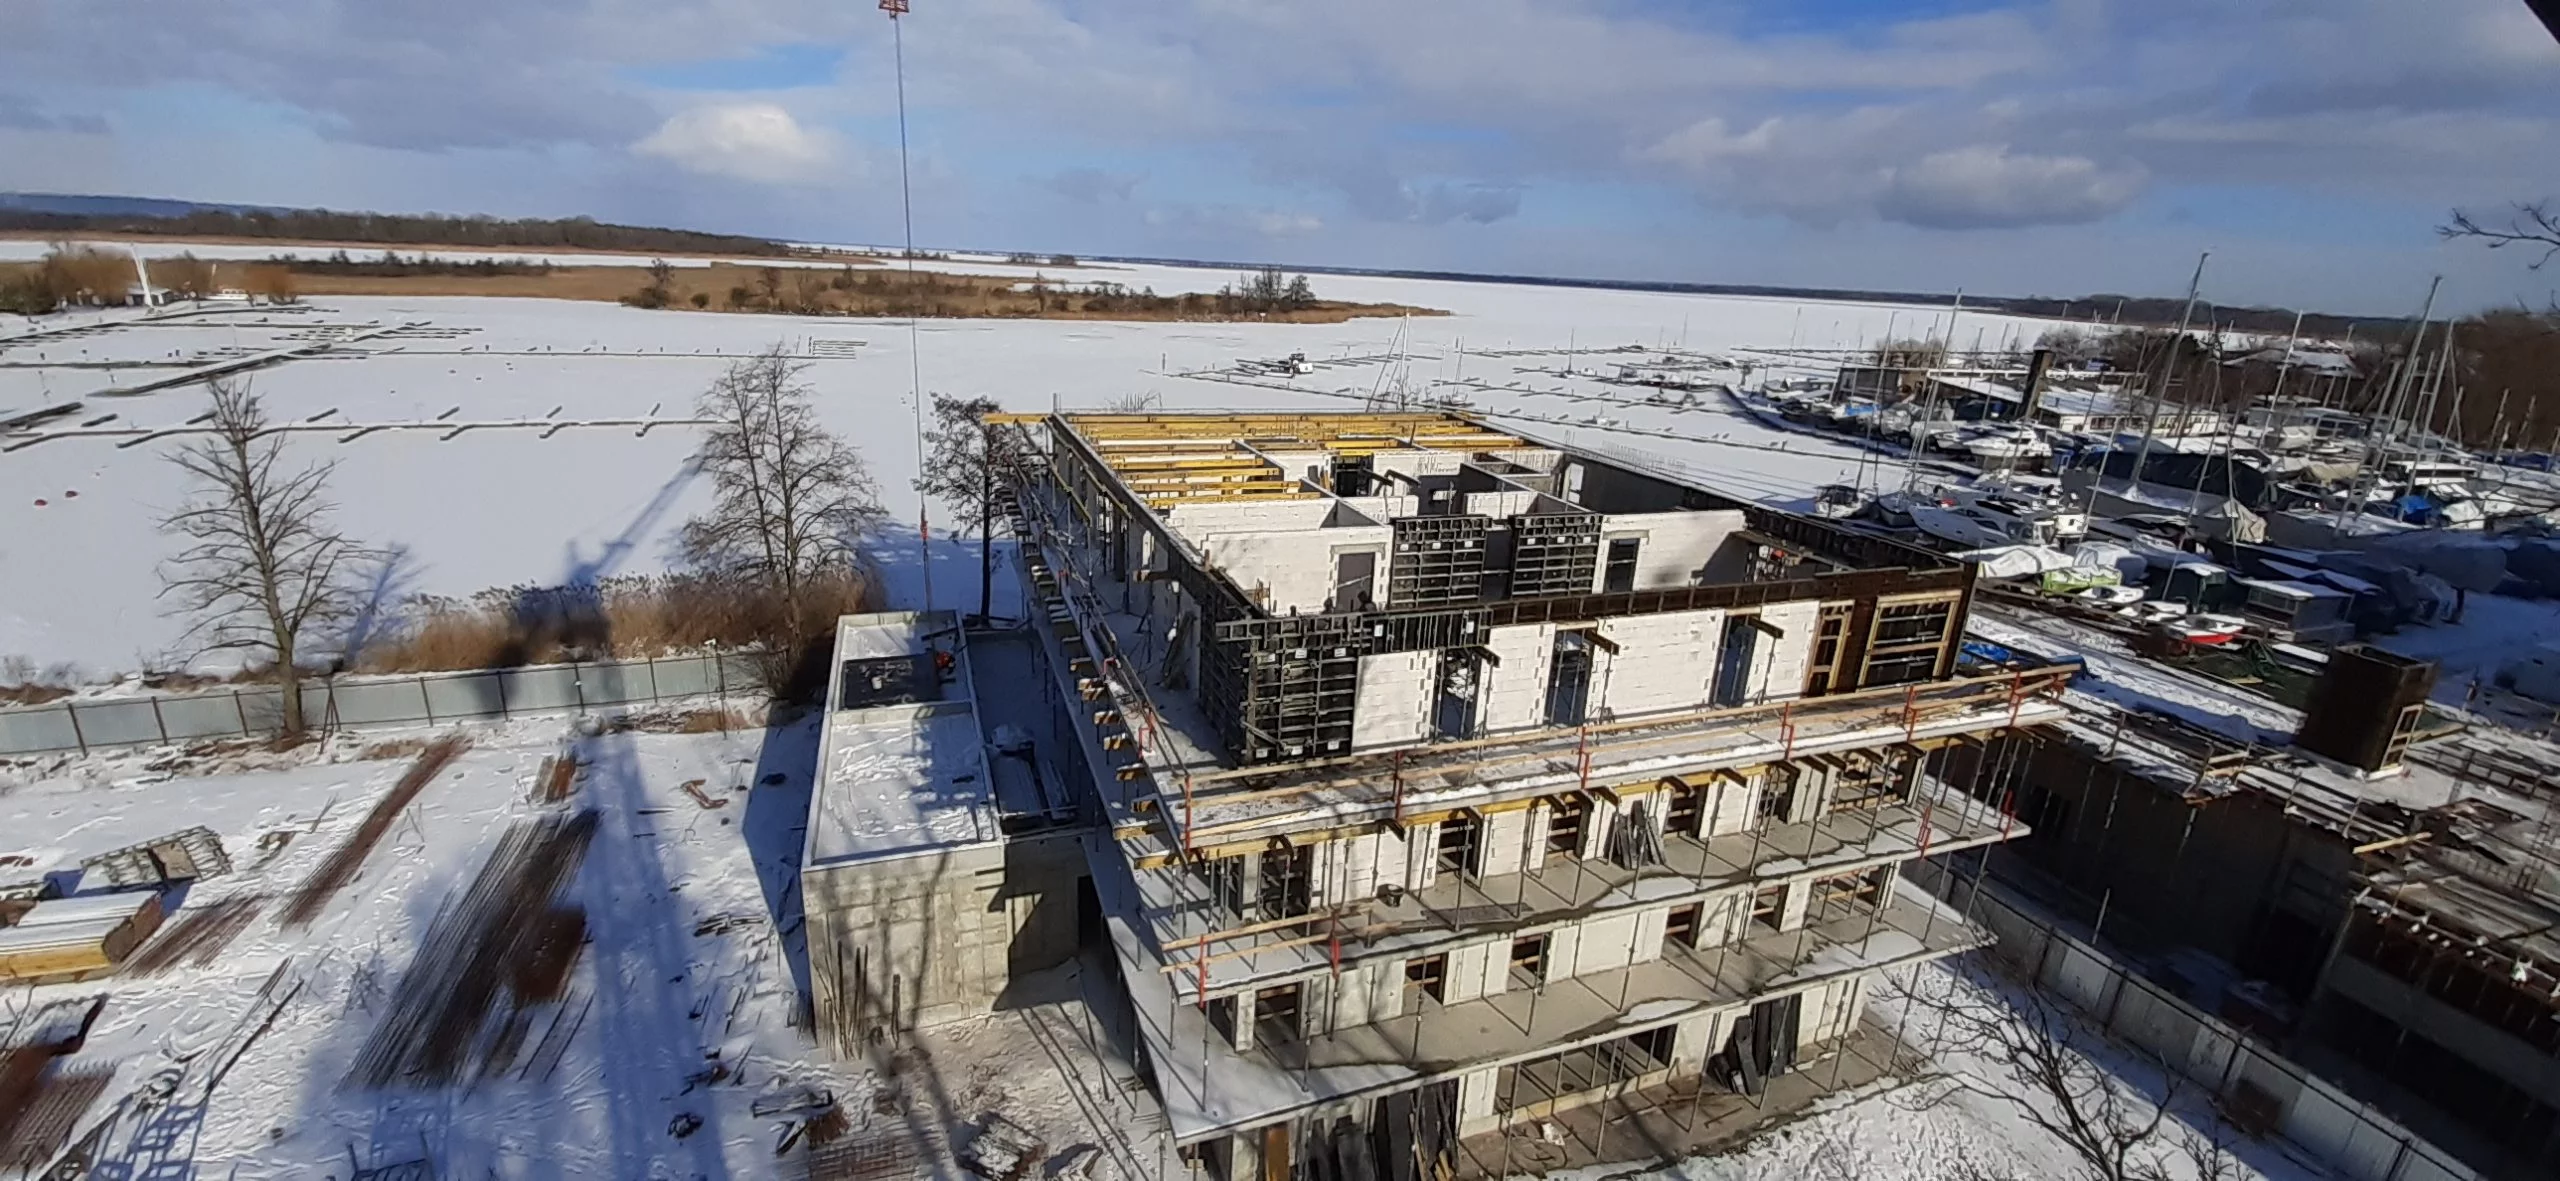 Victoria, Dziennik budowy Victoria Apartments w Szczecinie - styczeń 2021